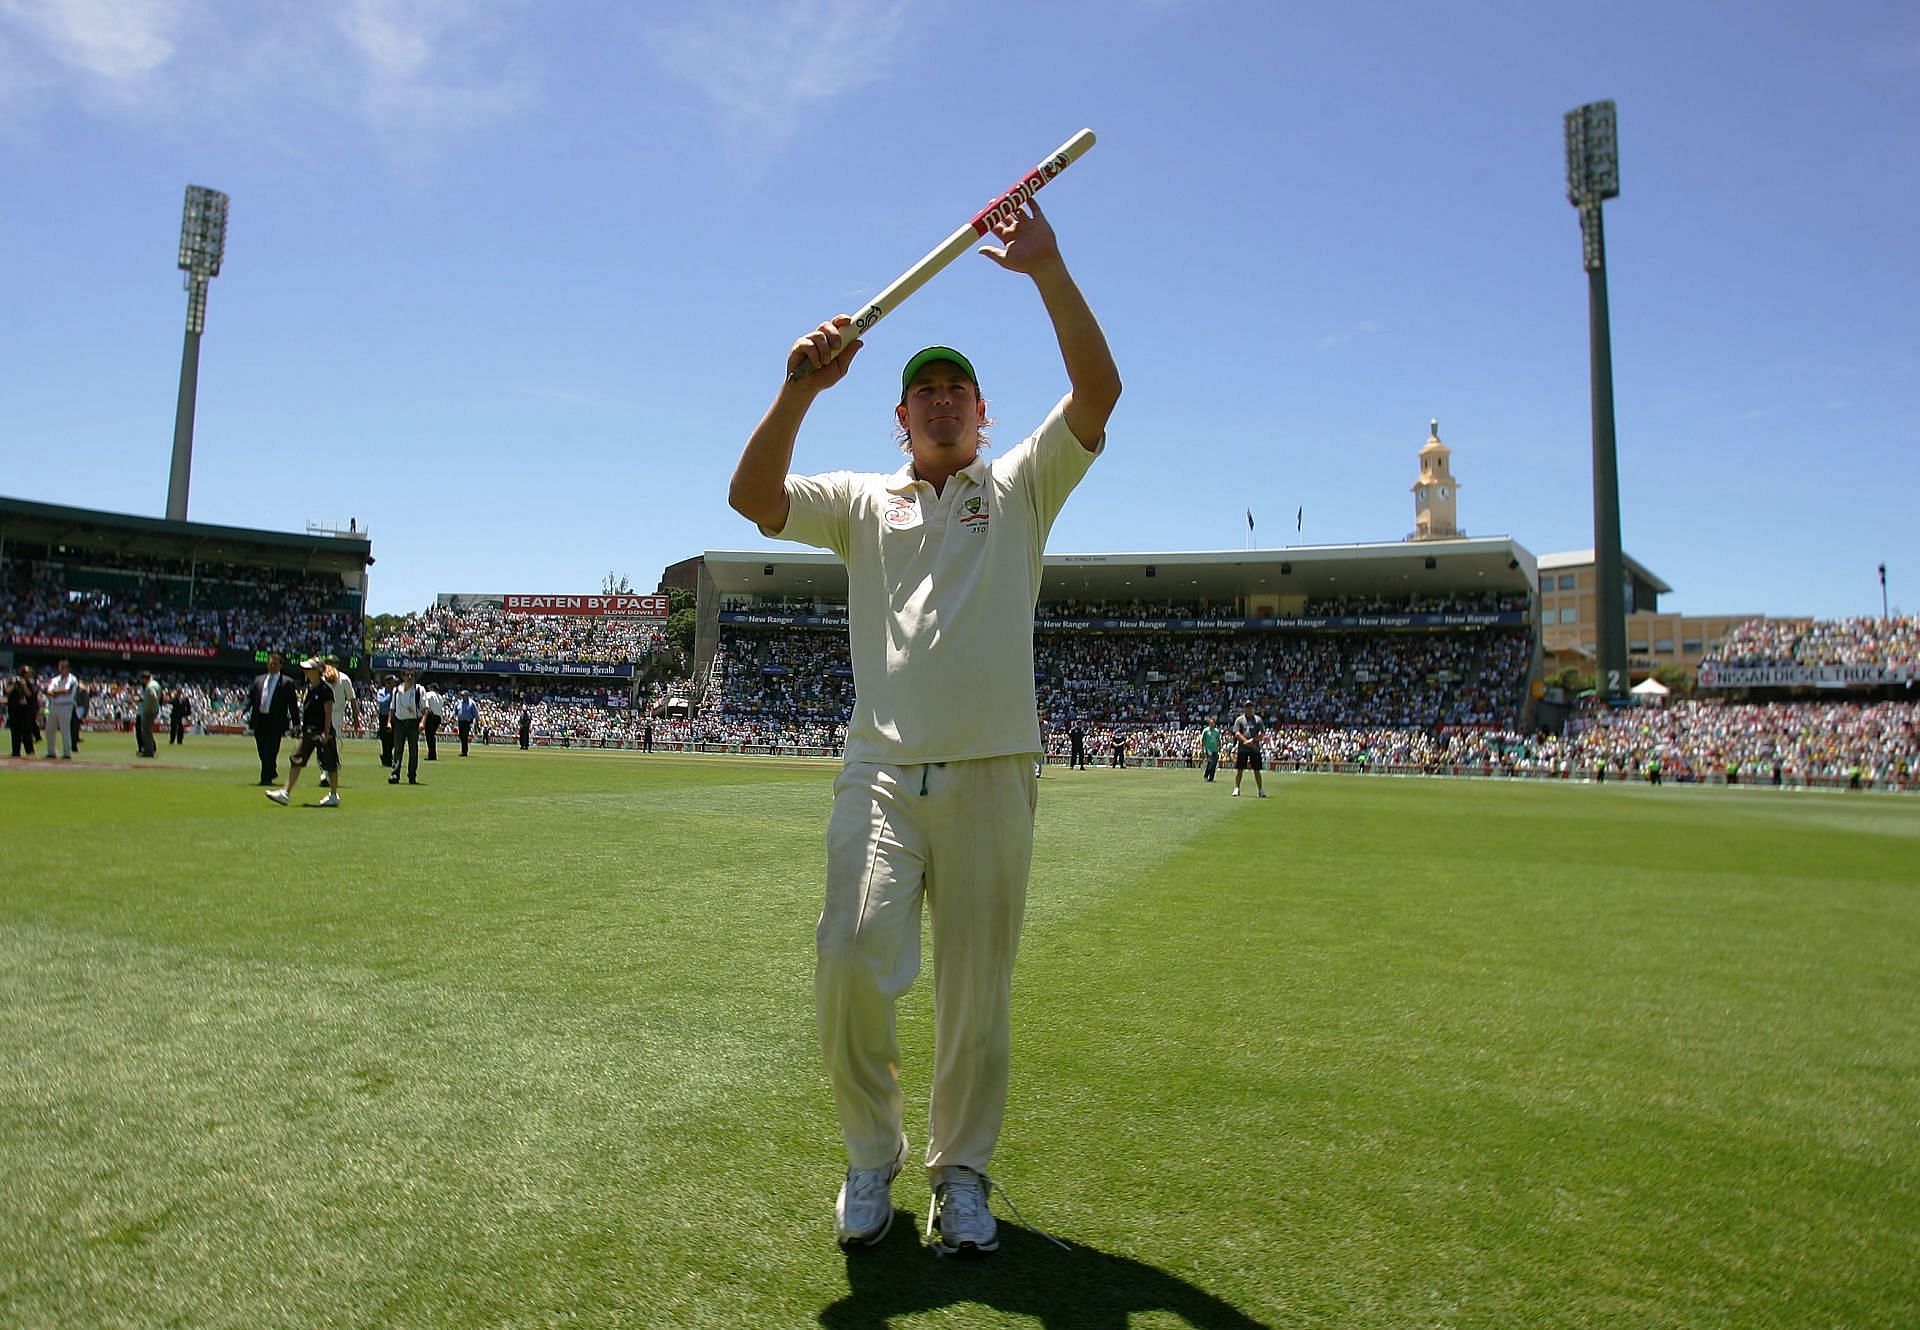 शेन वॉर्न दूसरे सबसे ज्यादा विकेट लेने वाले गेंदबाज हैं